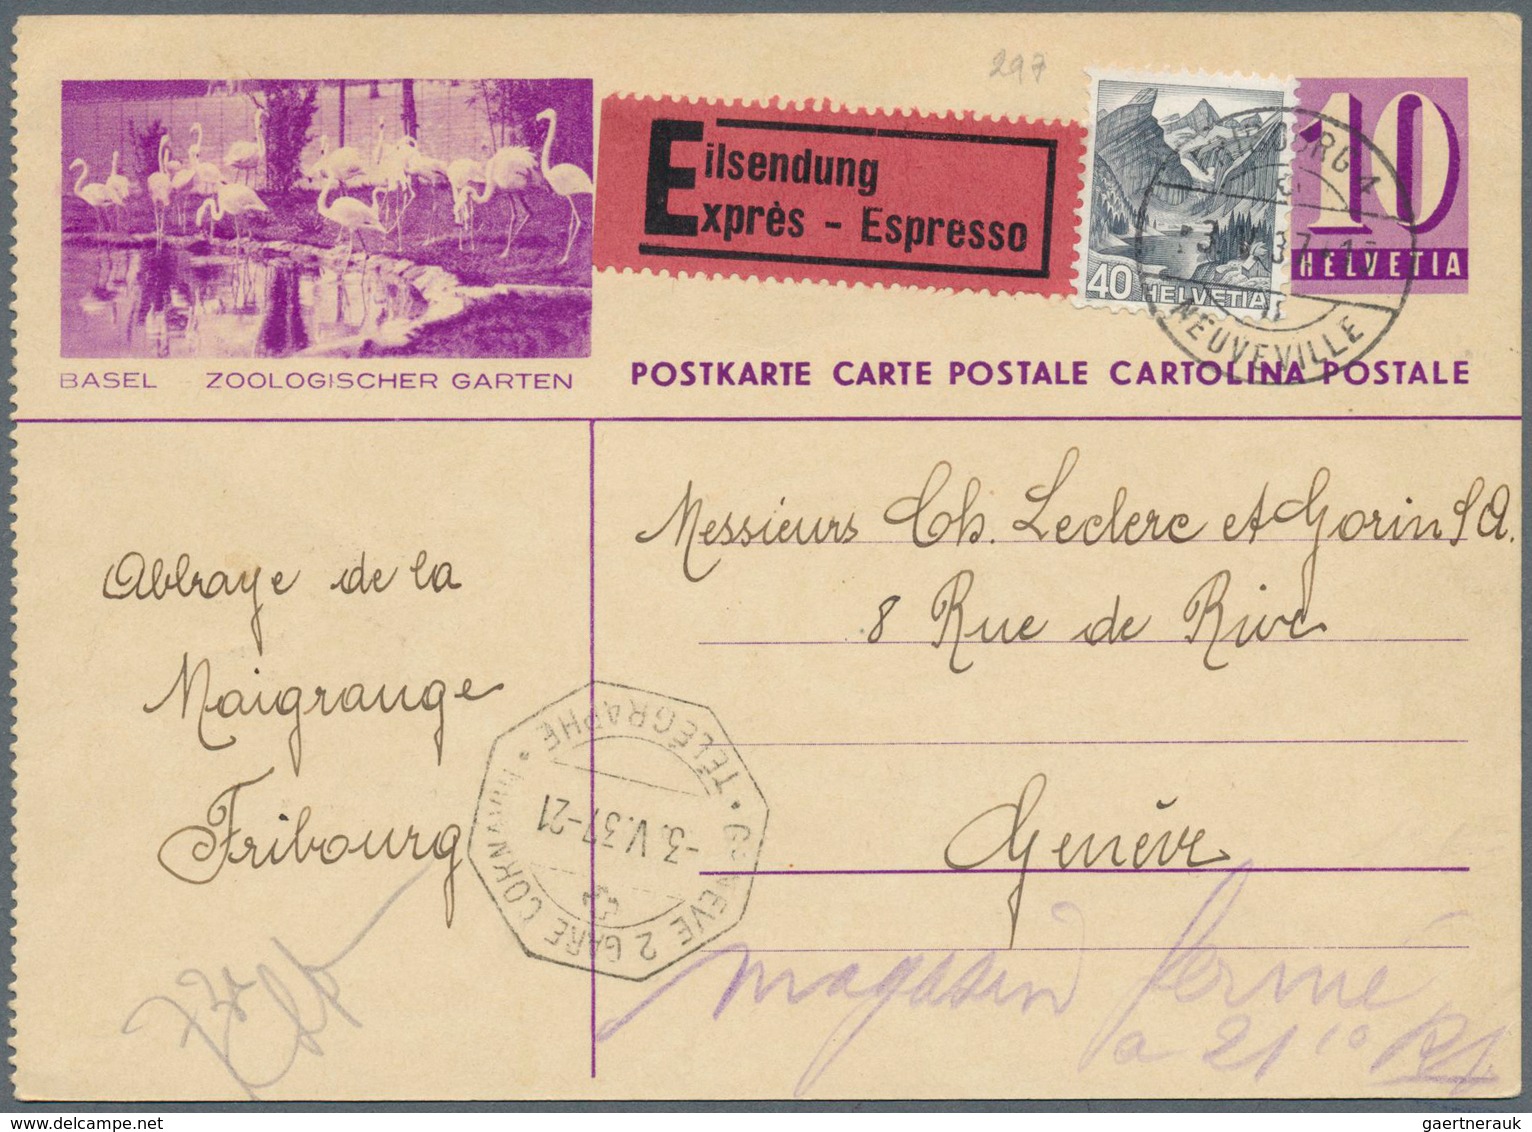 29864 Schweiz - Ganzsachen: 1924 ab, sehr umfangreiche Sammlung mit über 1200 meist gebrauchten Ganzsachen